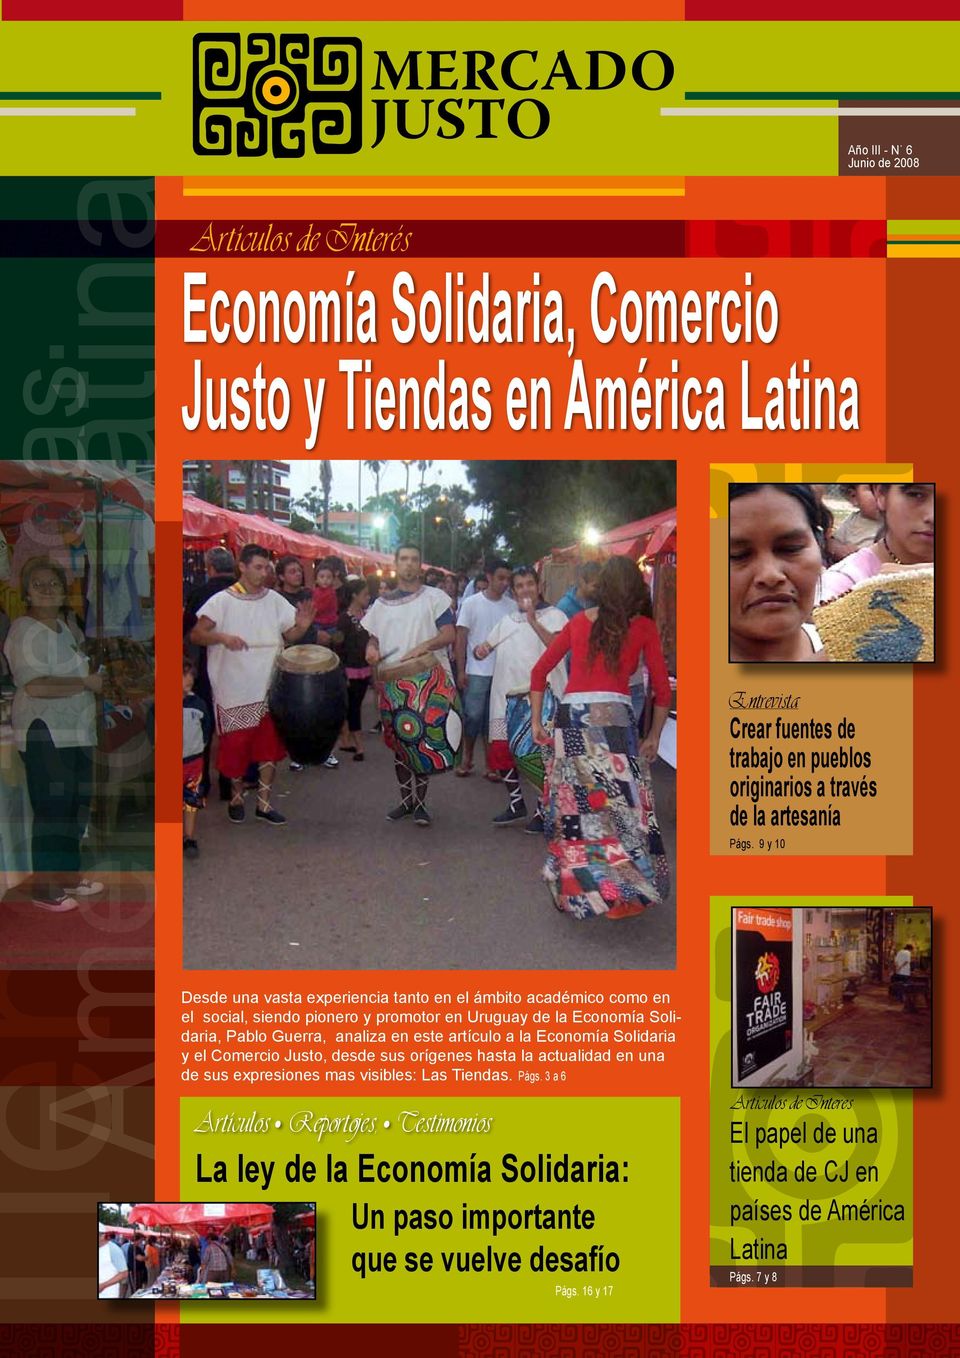 3 a 6 Periódico digital del Comercio Justo en América Latina Economía Solidaria, Comercio Justo y Tiendas en América Latina Artículos Reportojes, Testimonios La ley de la Economía Solidaria: Un paso